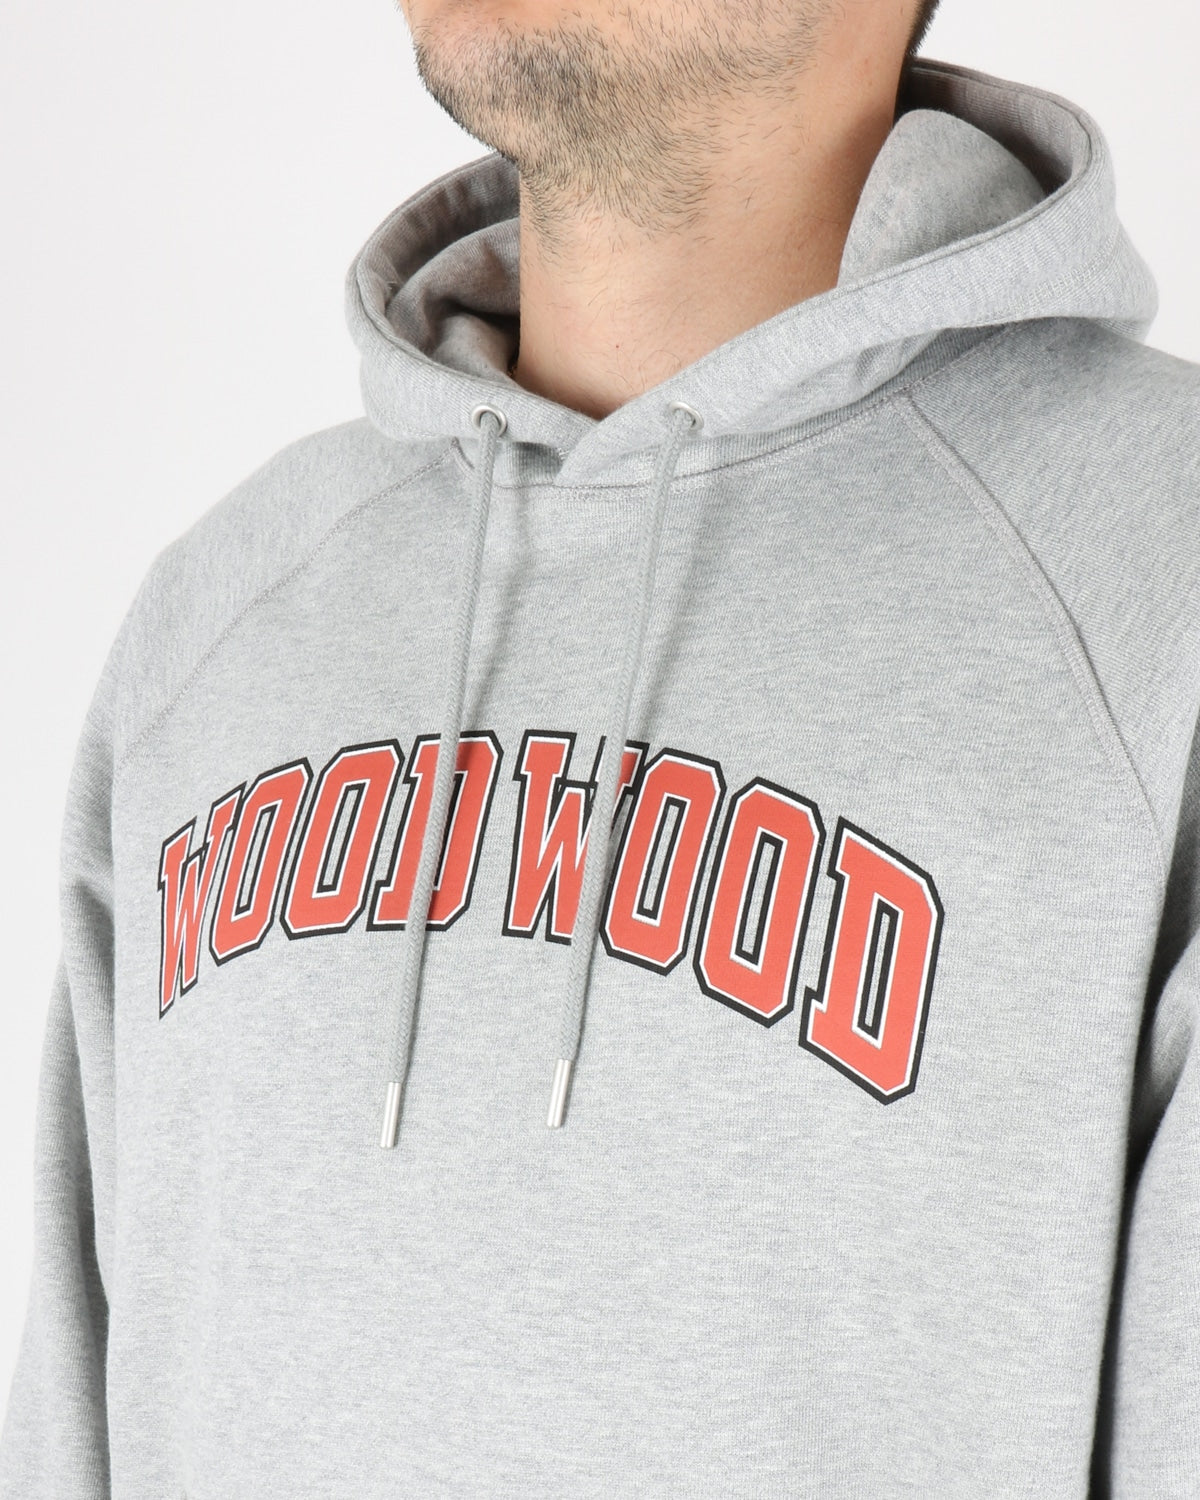 wood wood_fred ivy hoodie_grey melange_3_3